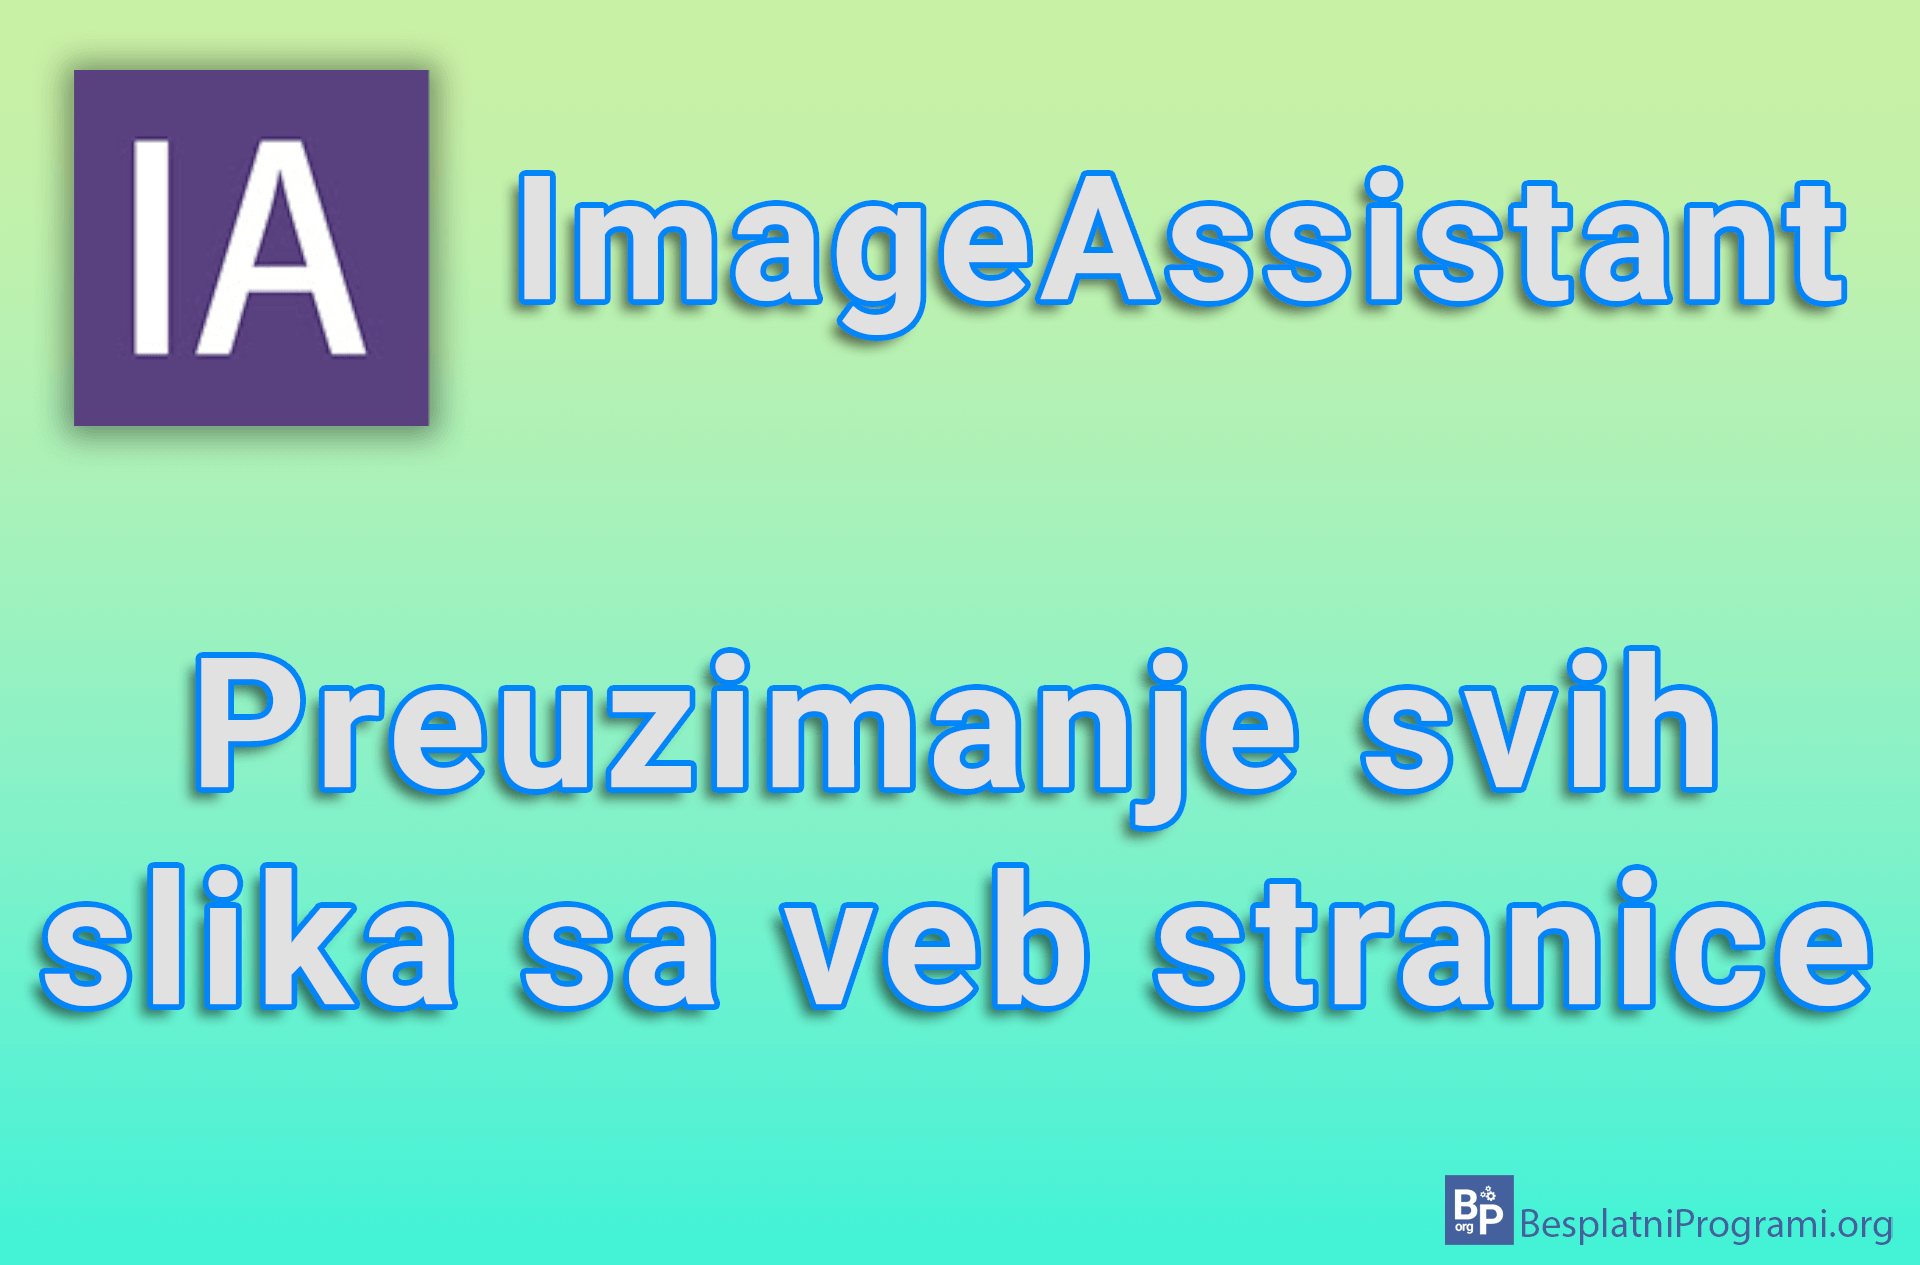 ImageAssistant – Preuzimanje svih slika sa veb stranice